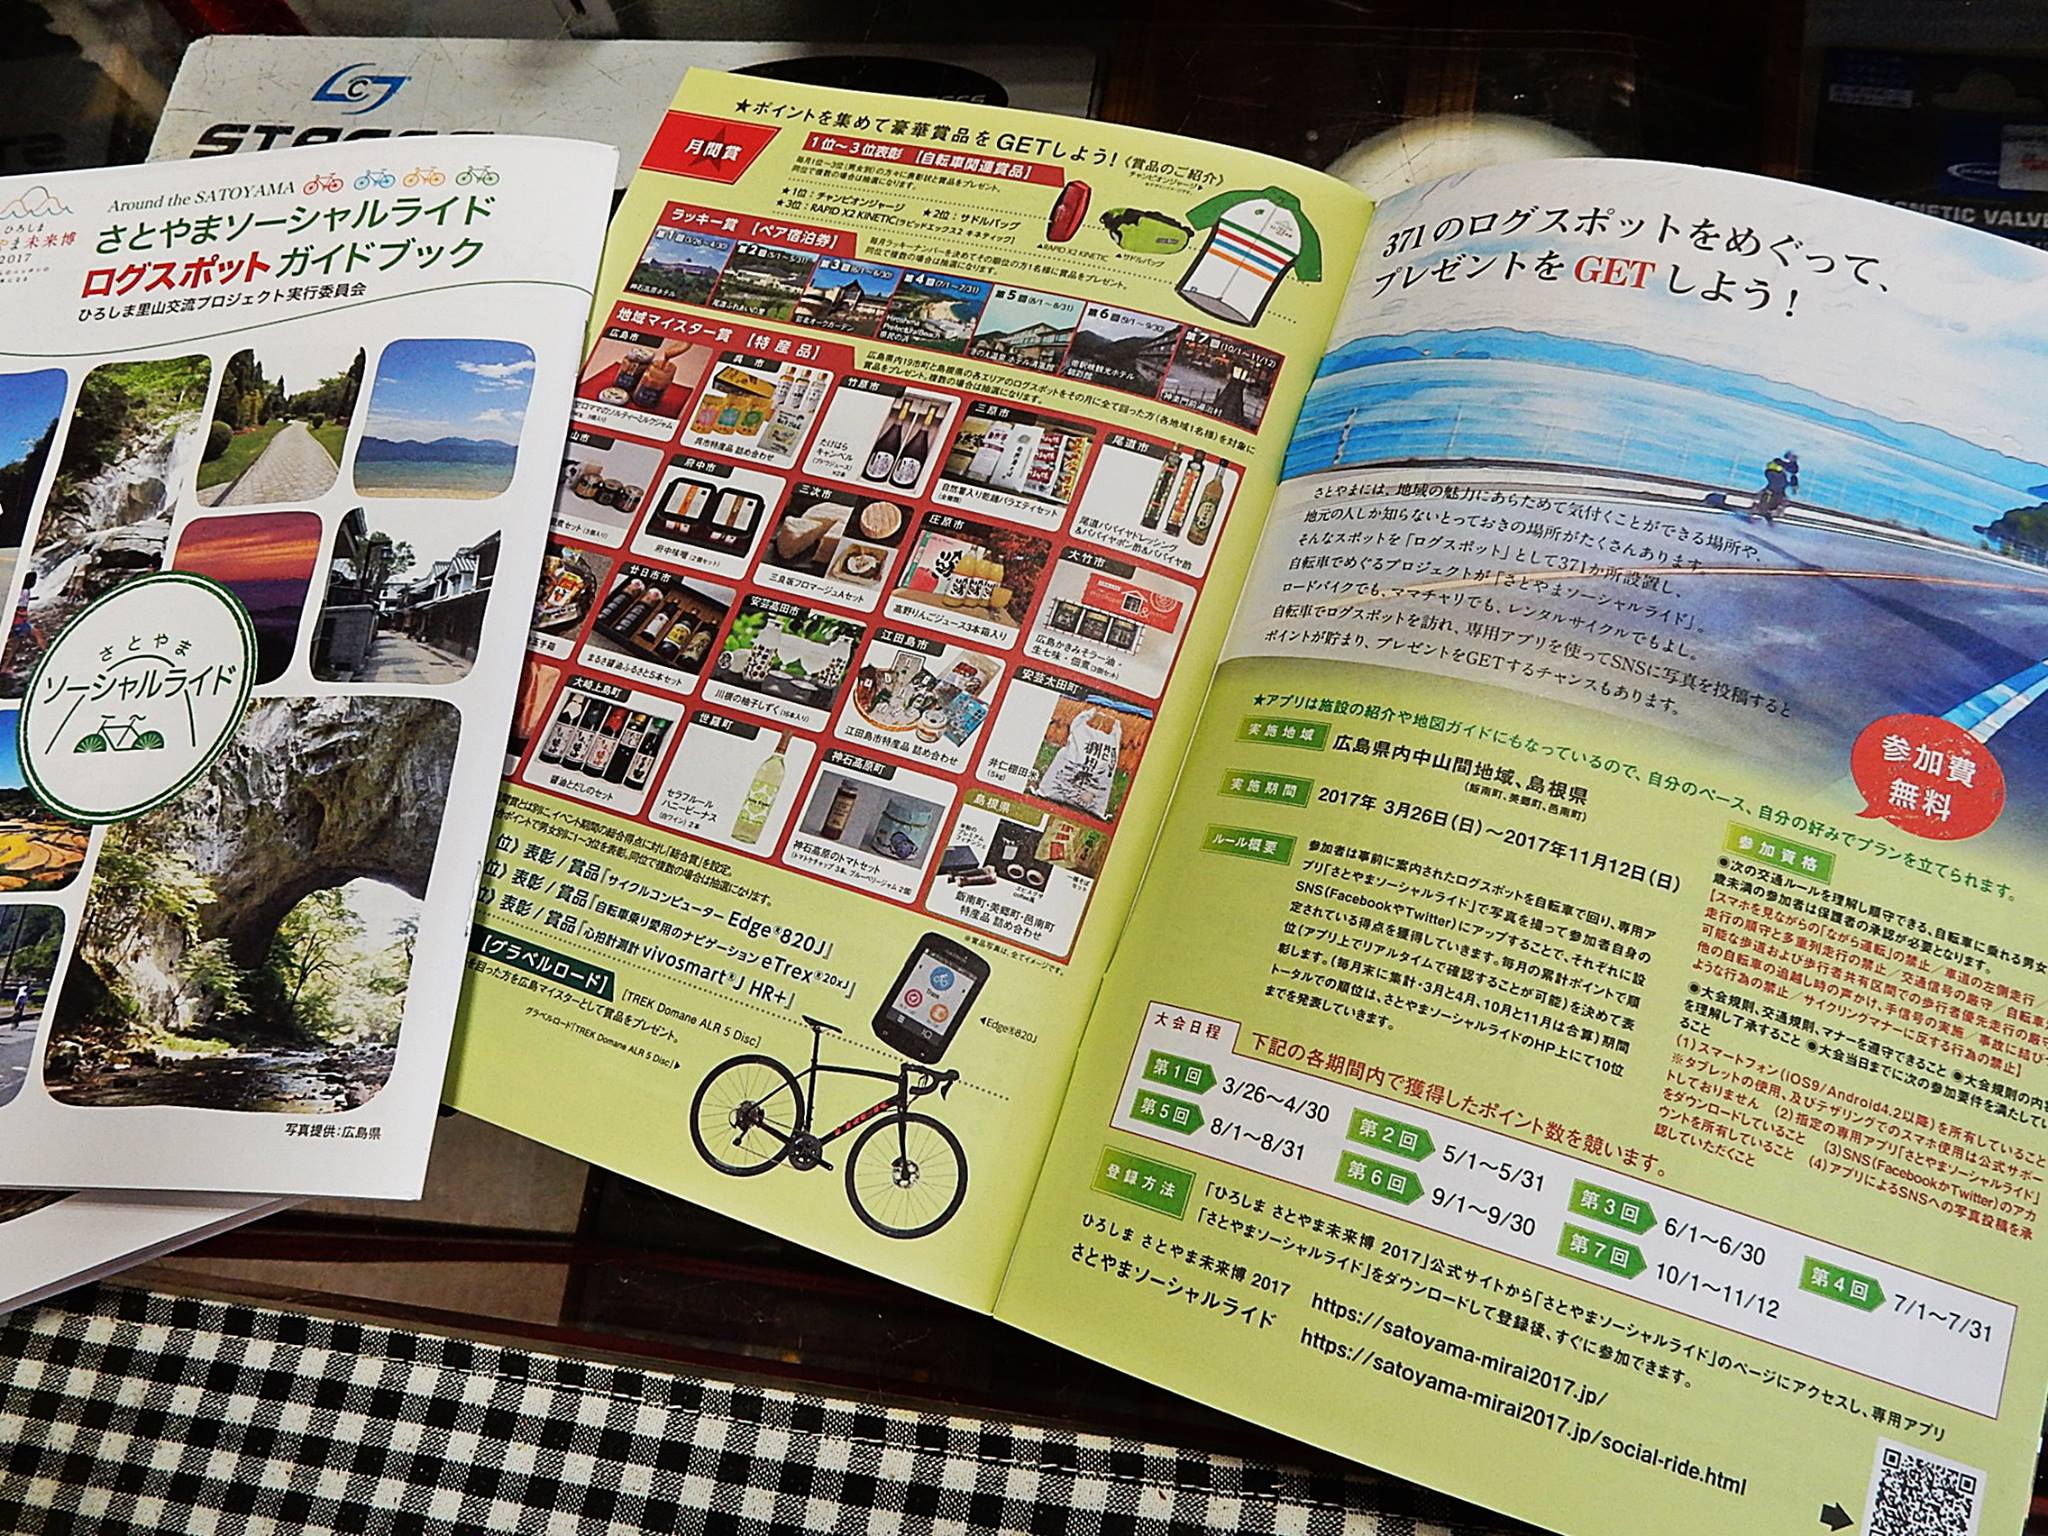 さとやまソーシャルライド　ログスポットガイドブック　広島県　サイクリング　ロードバイク　広島県福山市　FINE fine ファイン